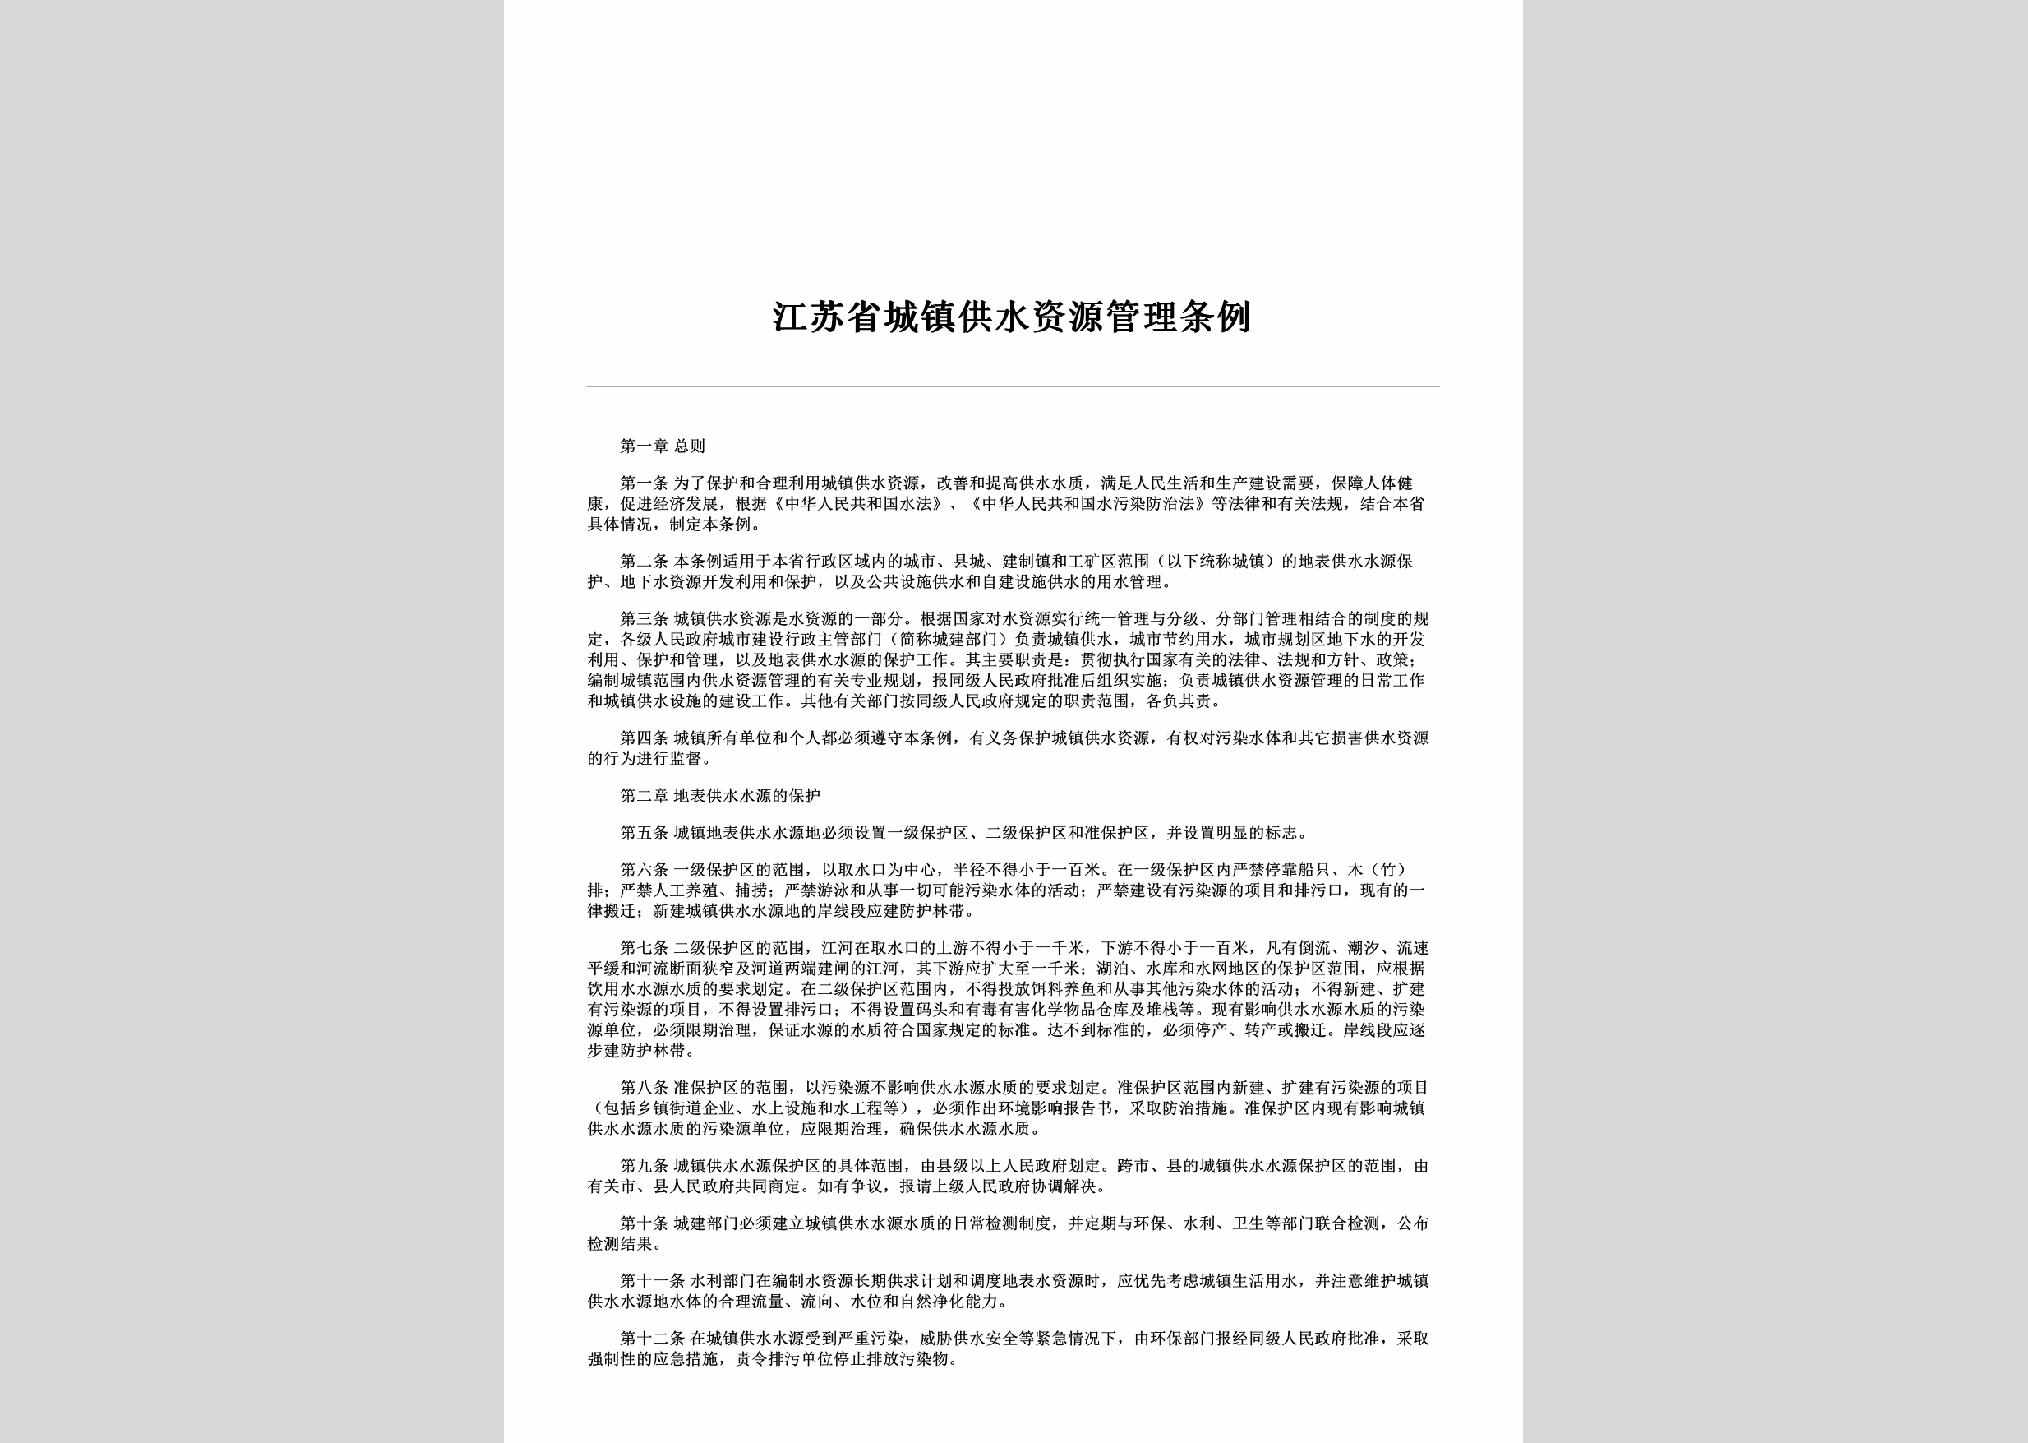 JS-CZGSZYGL-2002：江苏省城镇供水资源管理条例